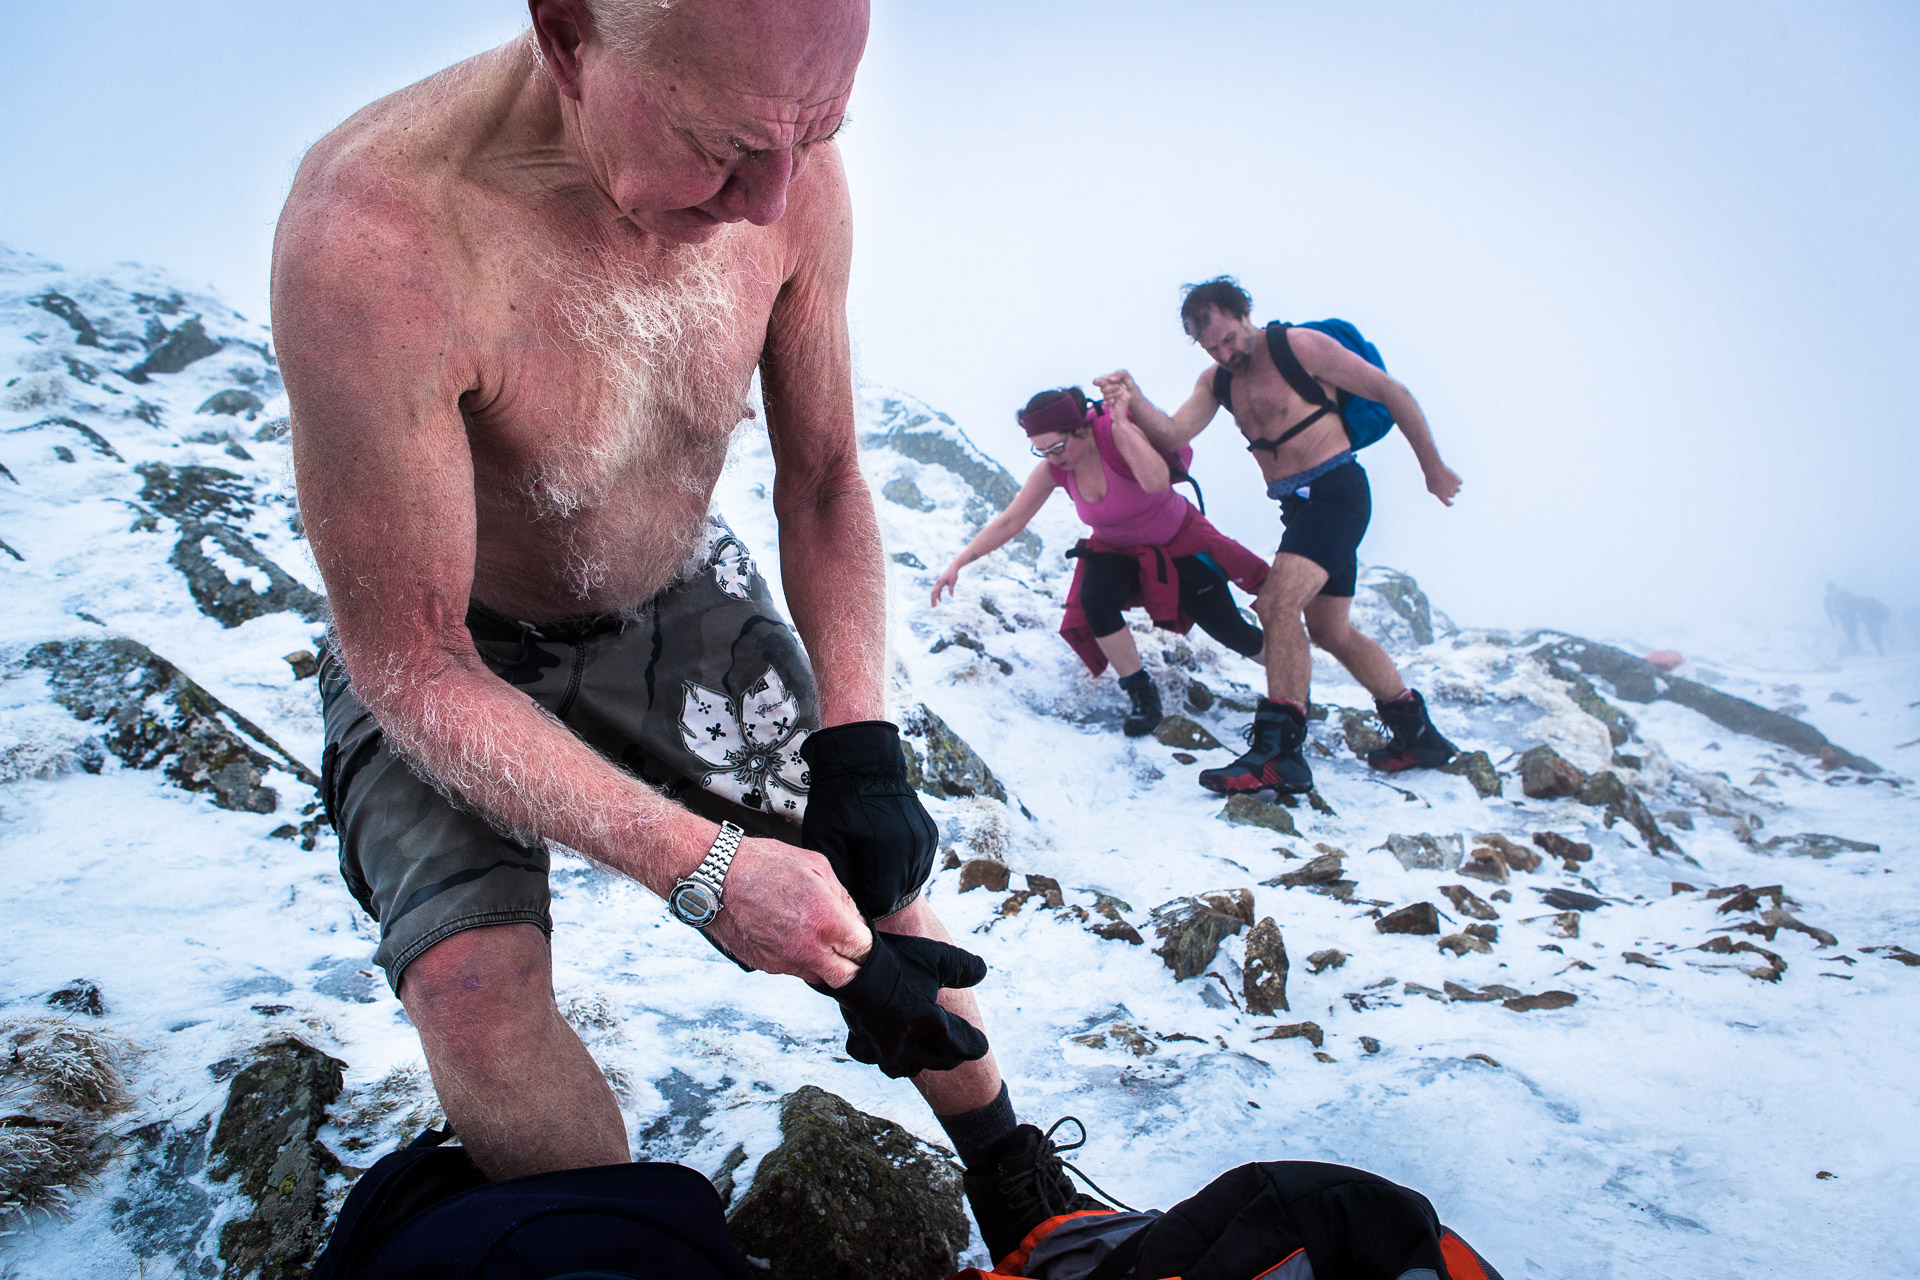  Karpacz, Pologne, 13/02/2014. Wubbo Ockels, 67 ans, ancien astronaute, se bat contre un cancer des reins et cherche un moyen de guérir lors de ce stage de résistance au froid. Il monte ici la montagne Sniejka par des températures proches de -10°C.

